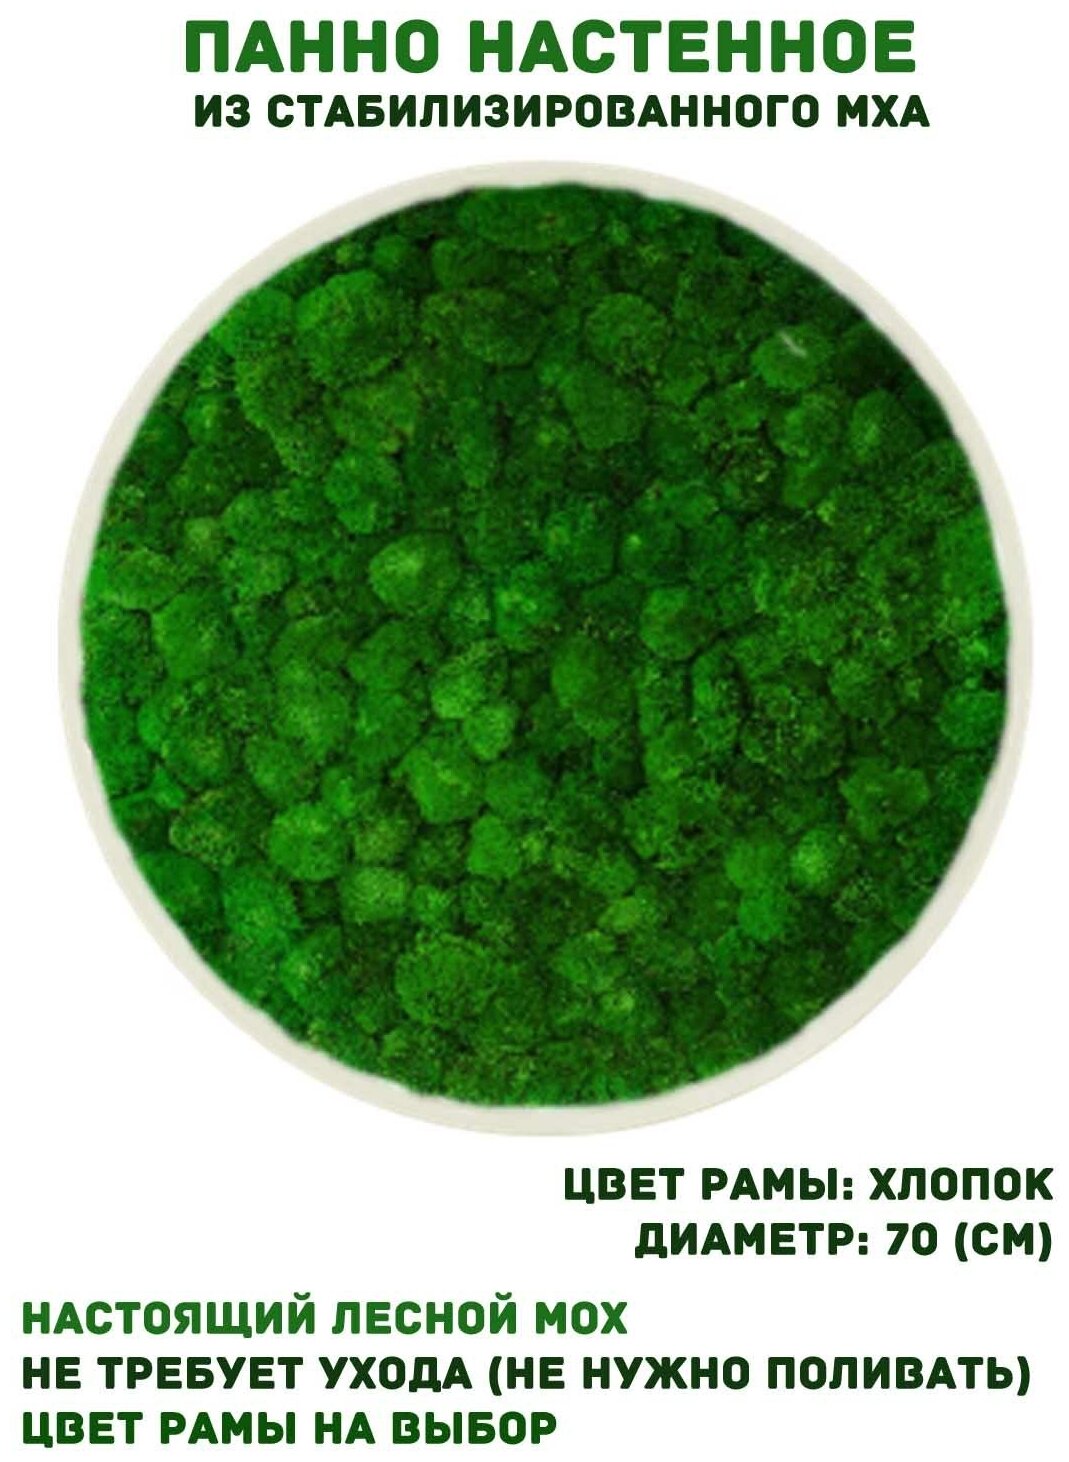 Круглое панно из стабилизированно мха GardenGo в рамке цвета хлопок, диаметр 70 см, цвет мха зеленый